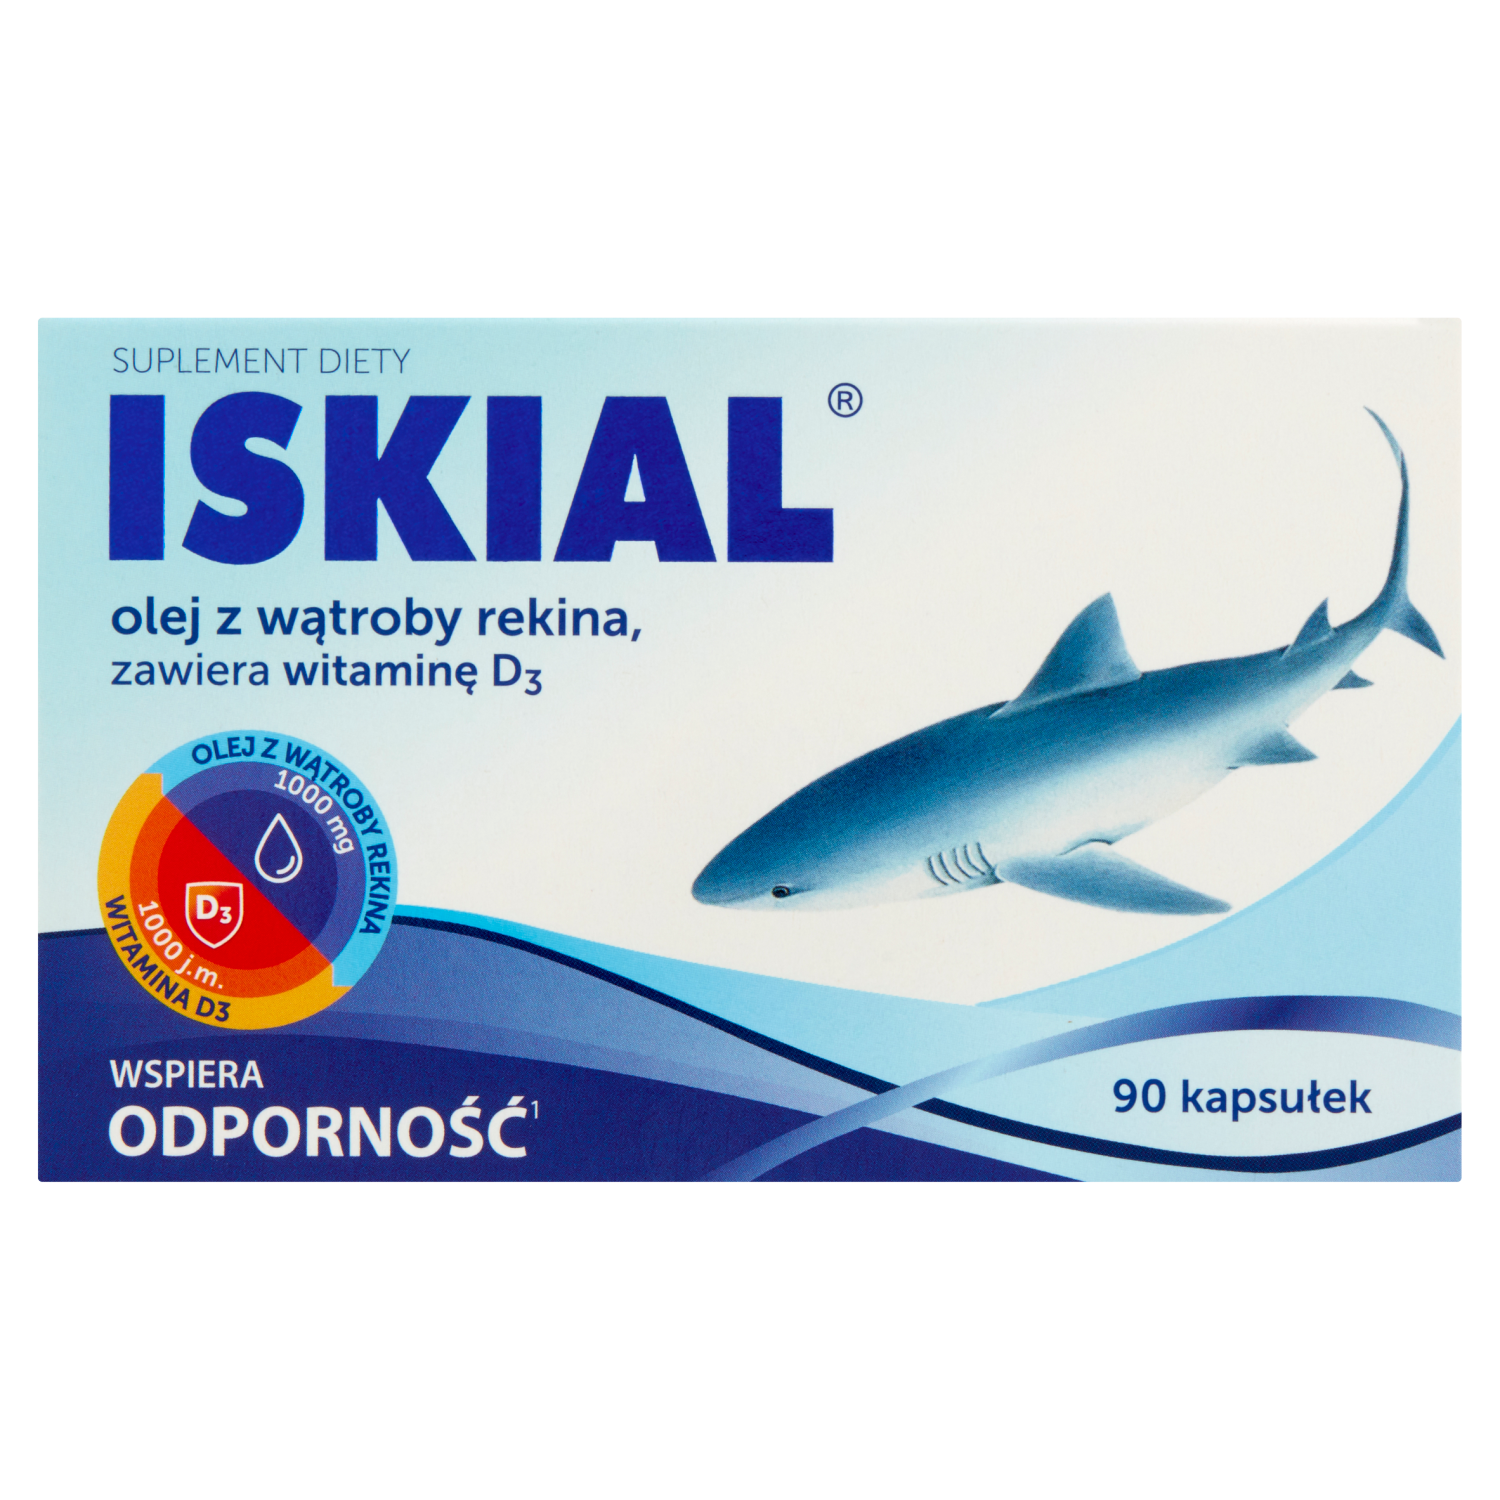 Iskial пищевая добавка, поддерживающая иммунитет, 90 кап./1 уп.